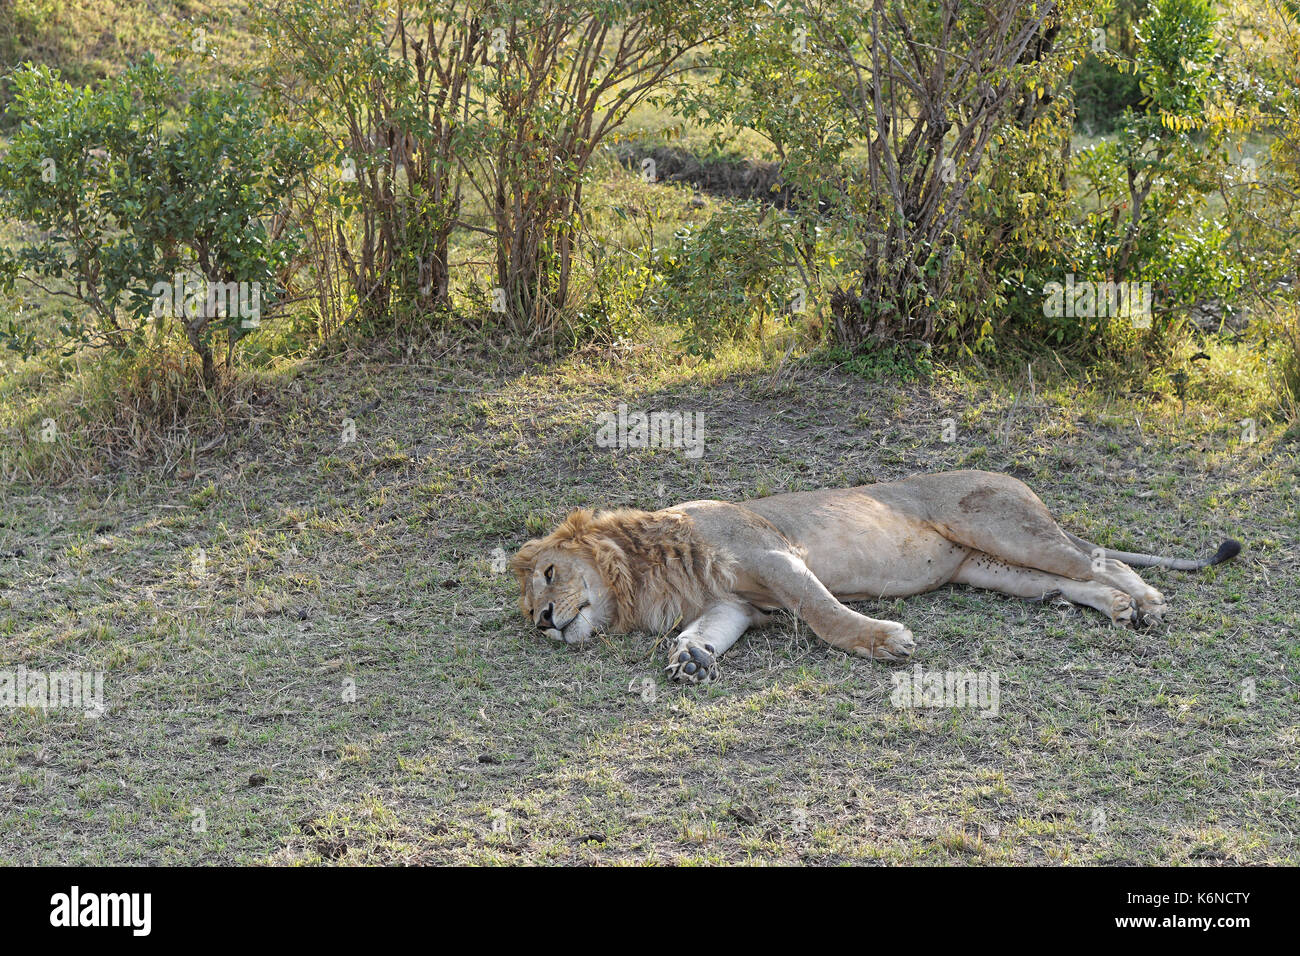 Dormir à l'ombre de lion kenya safari Banque D'Images